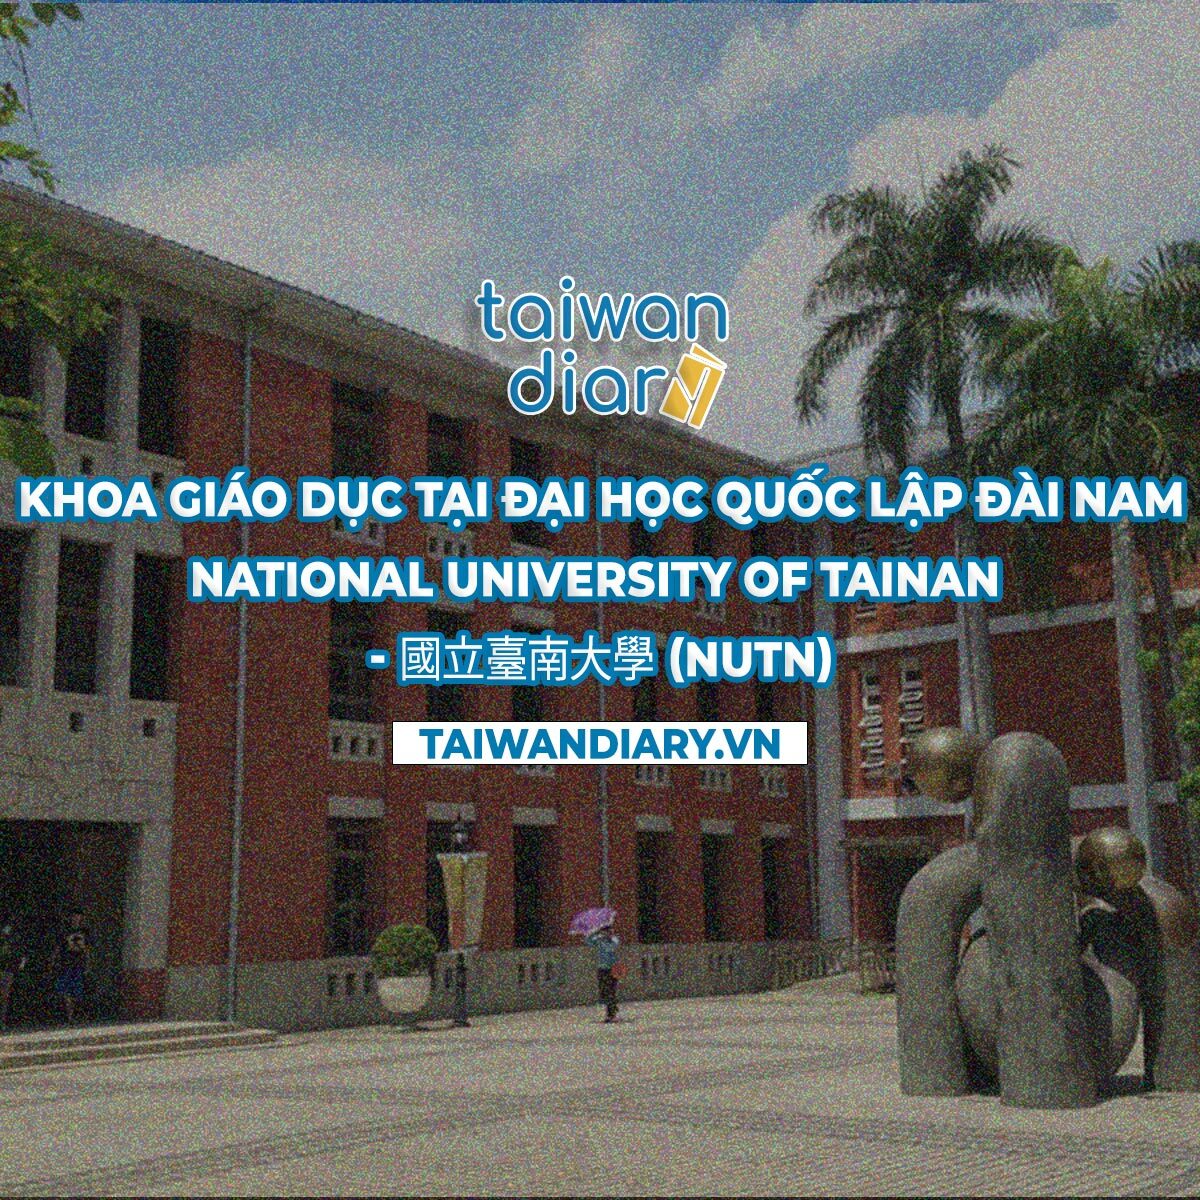 Đại học Quốc lập Đài Nam